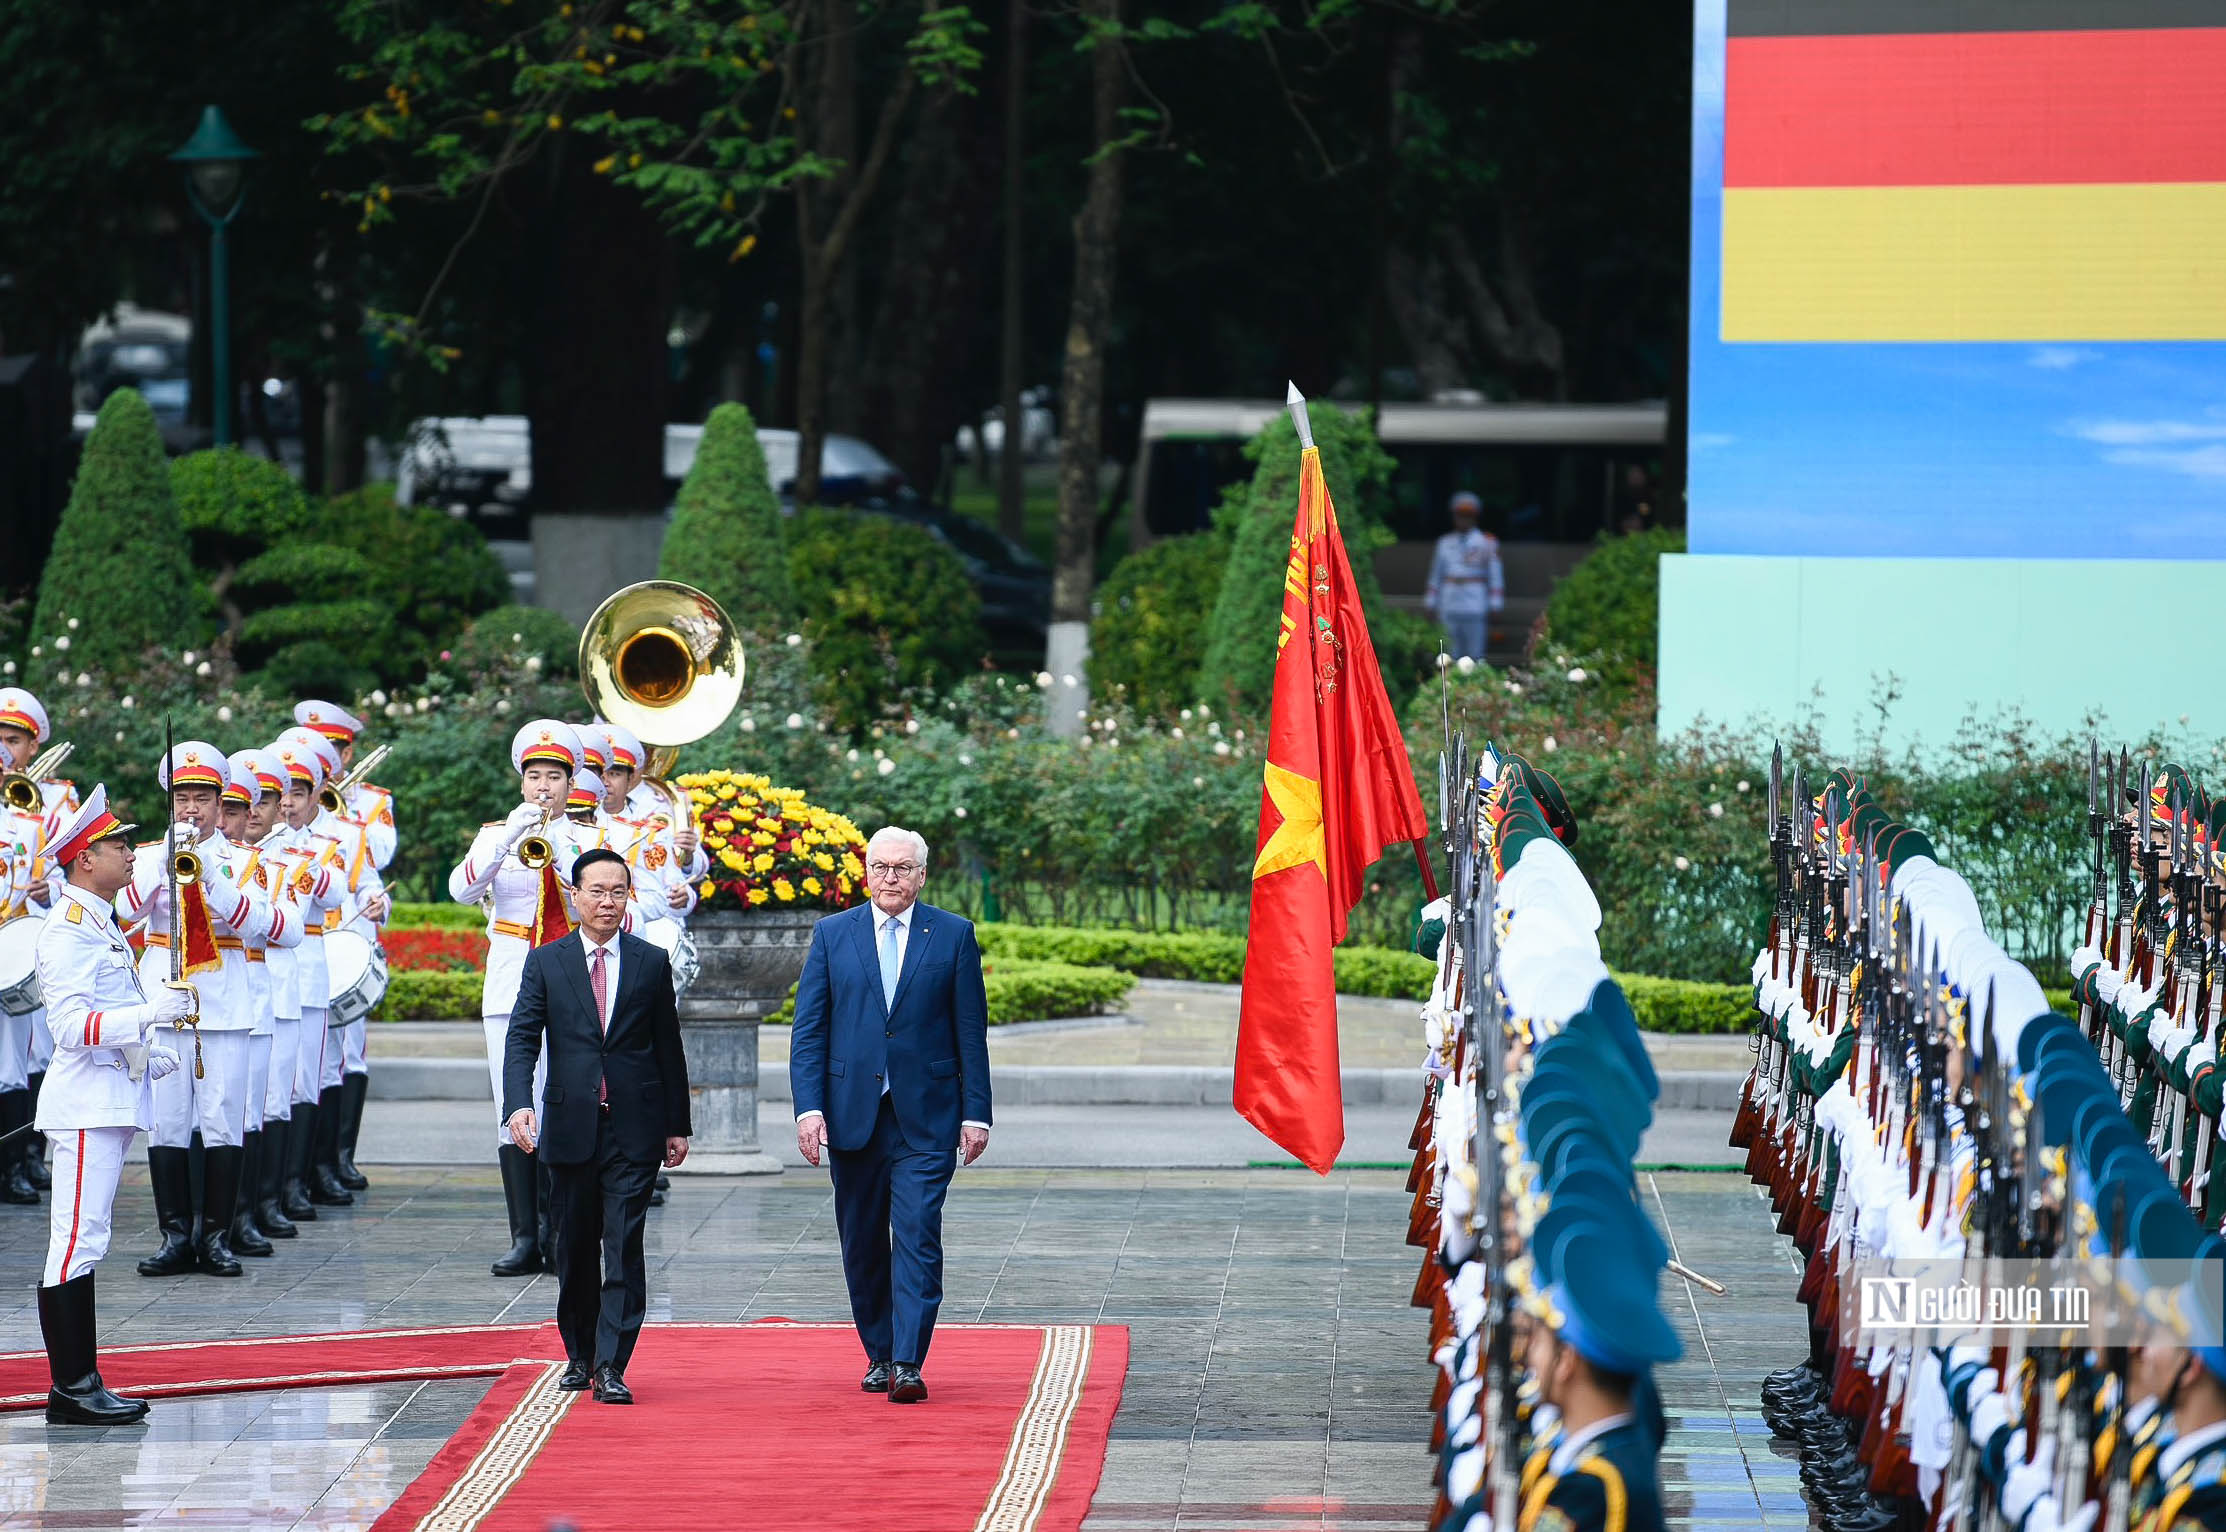 Tiêu điểm - Bắn 21 phát đại bác chào mừng Tổng thống Đức tới thăm Việt Nam (Hình 11).